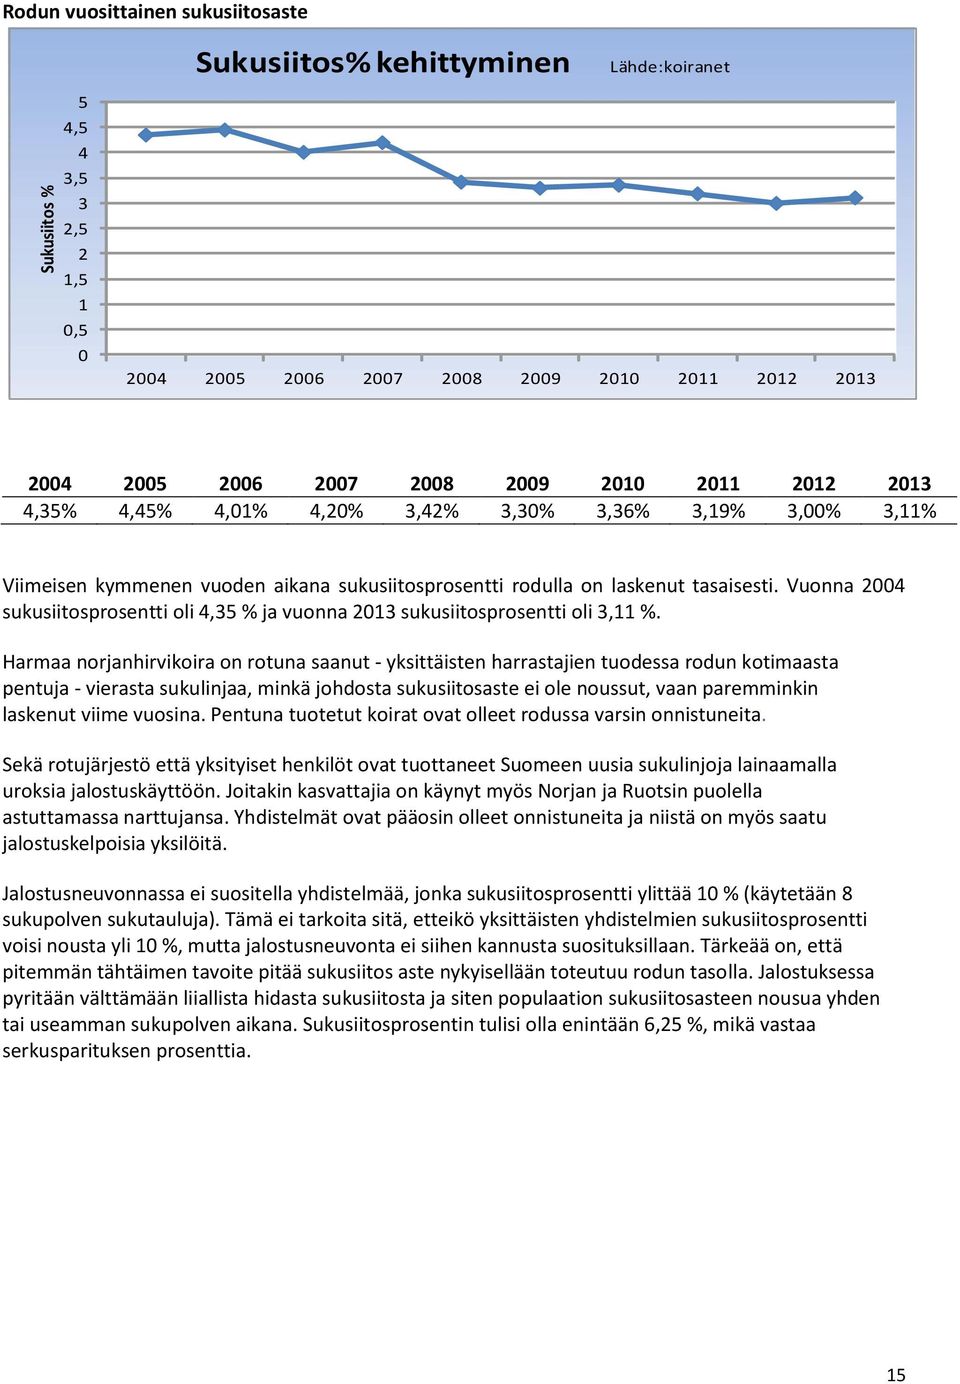 Vuonna 2004 sukusiitosprosentti oli 4,35 % ja vuonna 2013 sukusiitosprosentti oli 3,11 %.